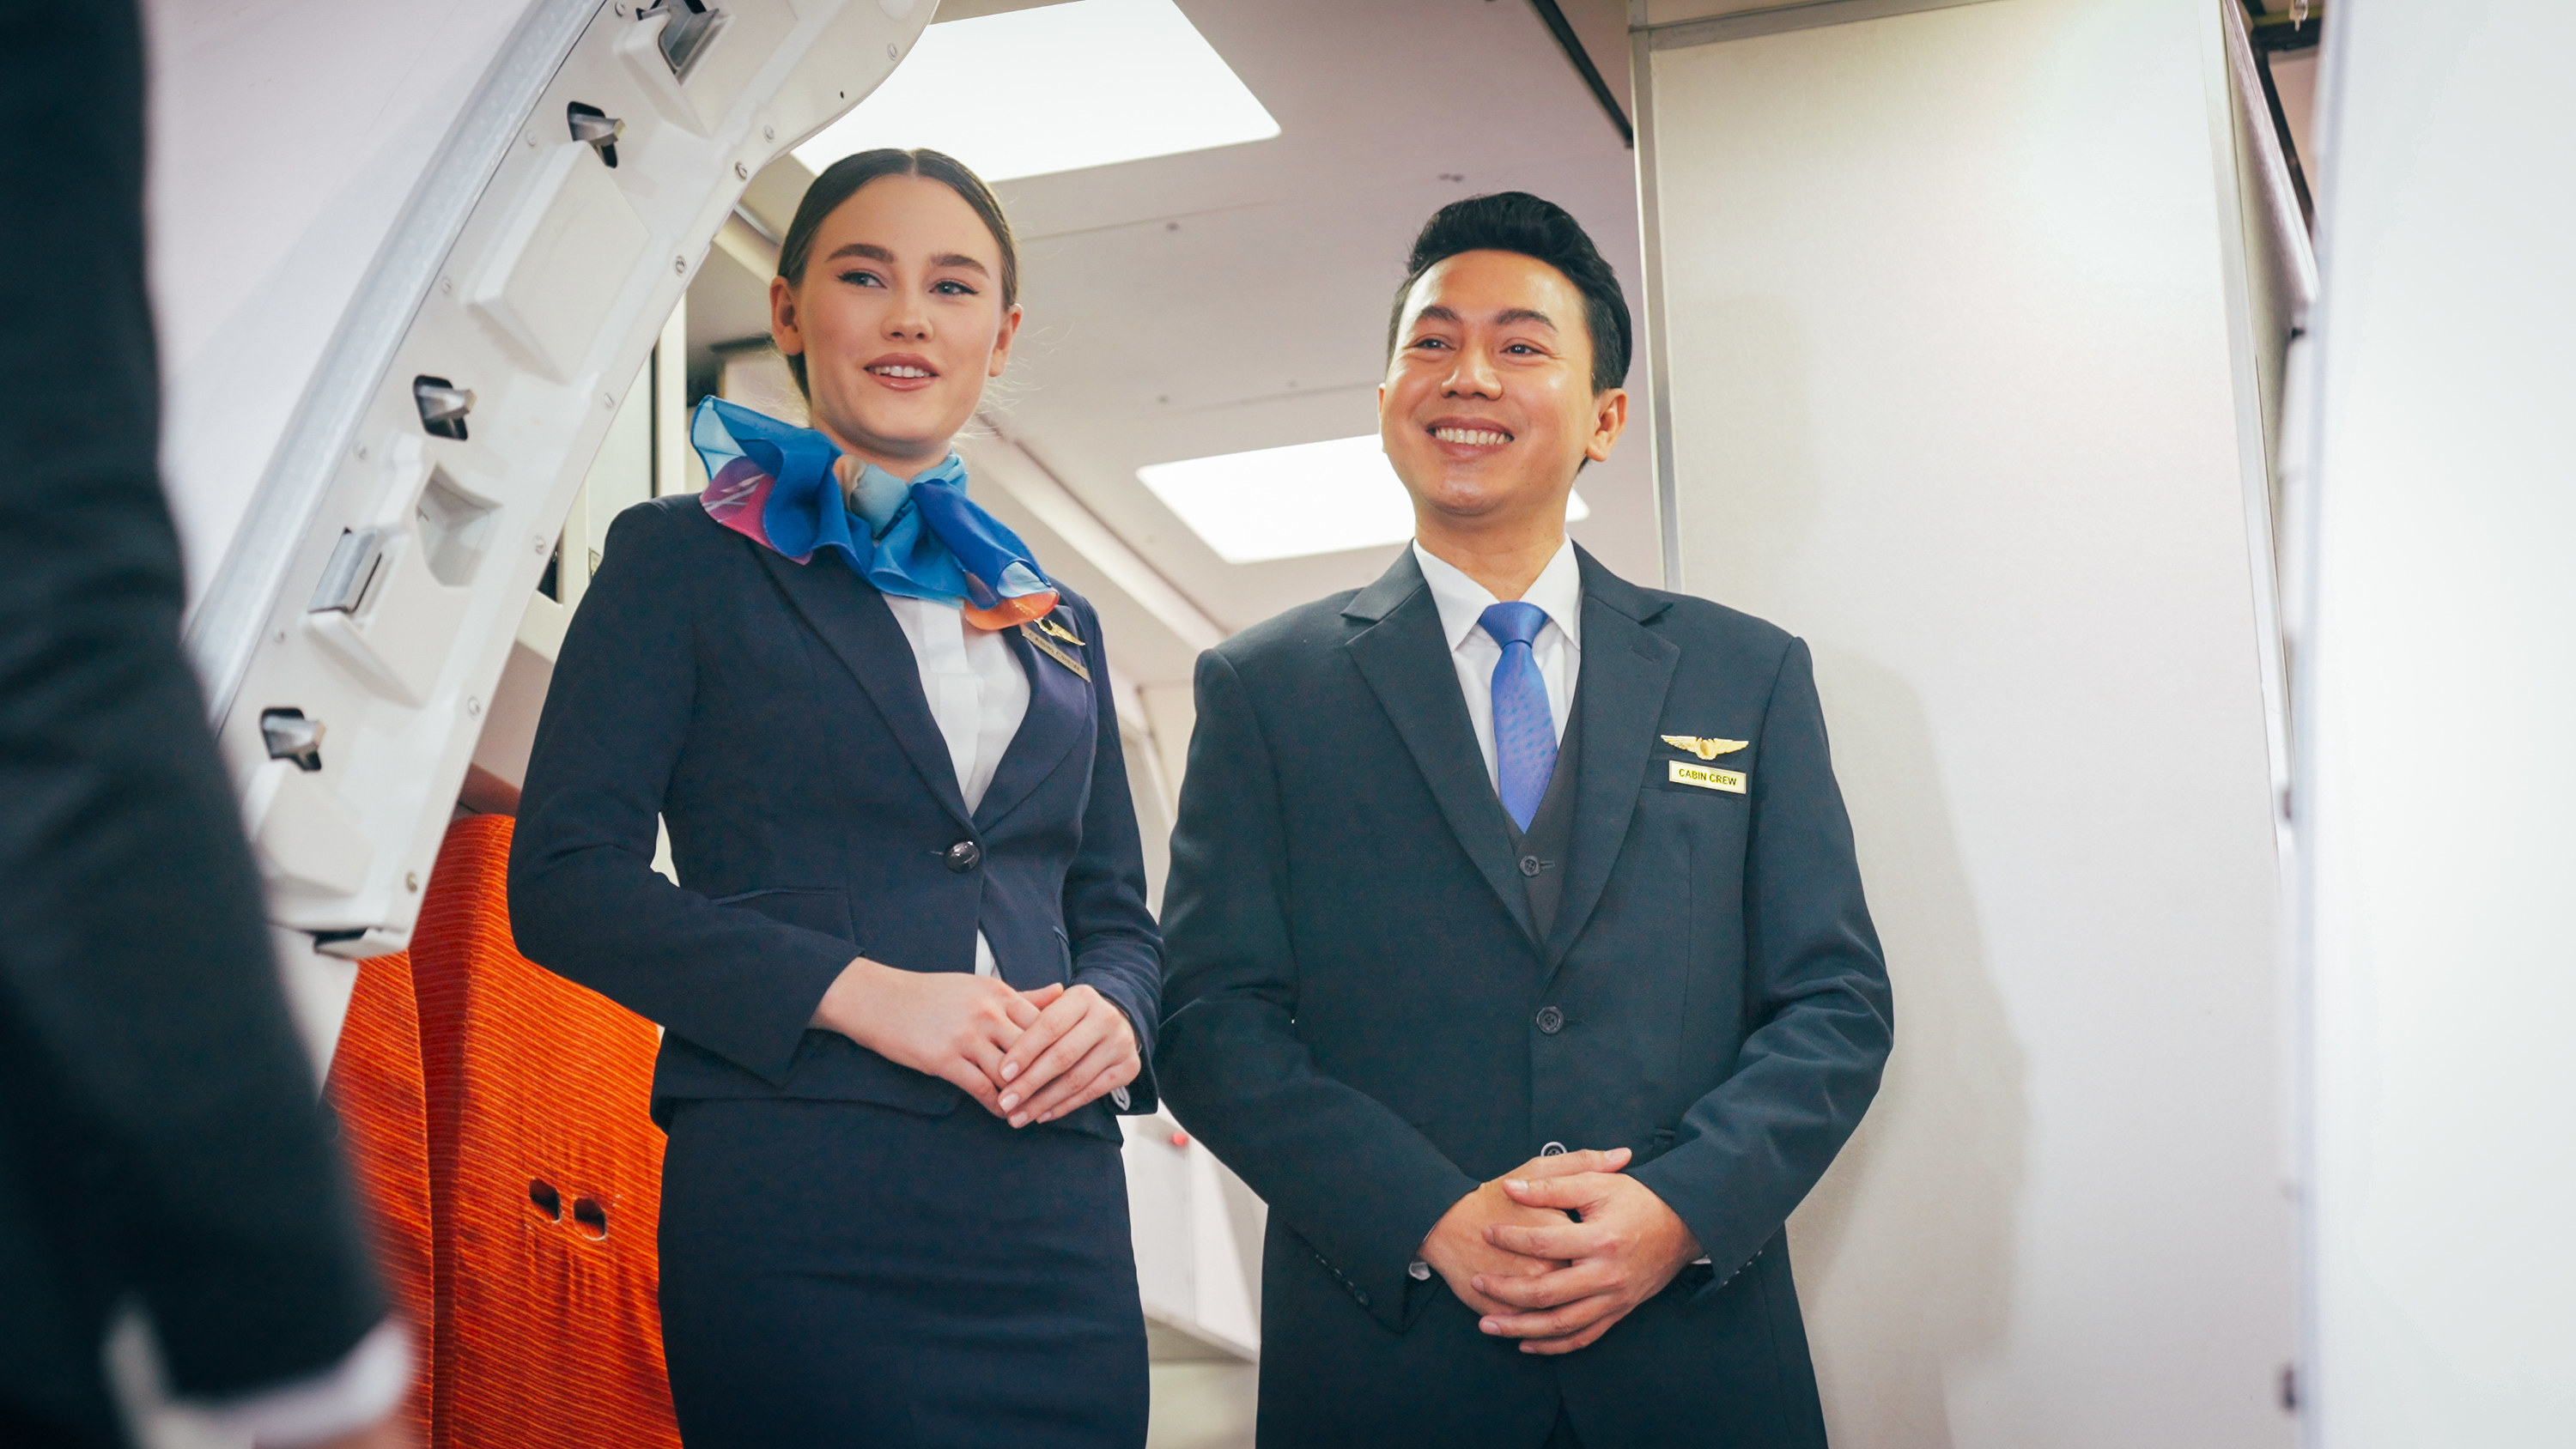 Flight attendants smiling